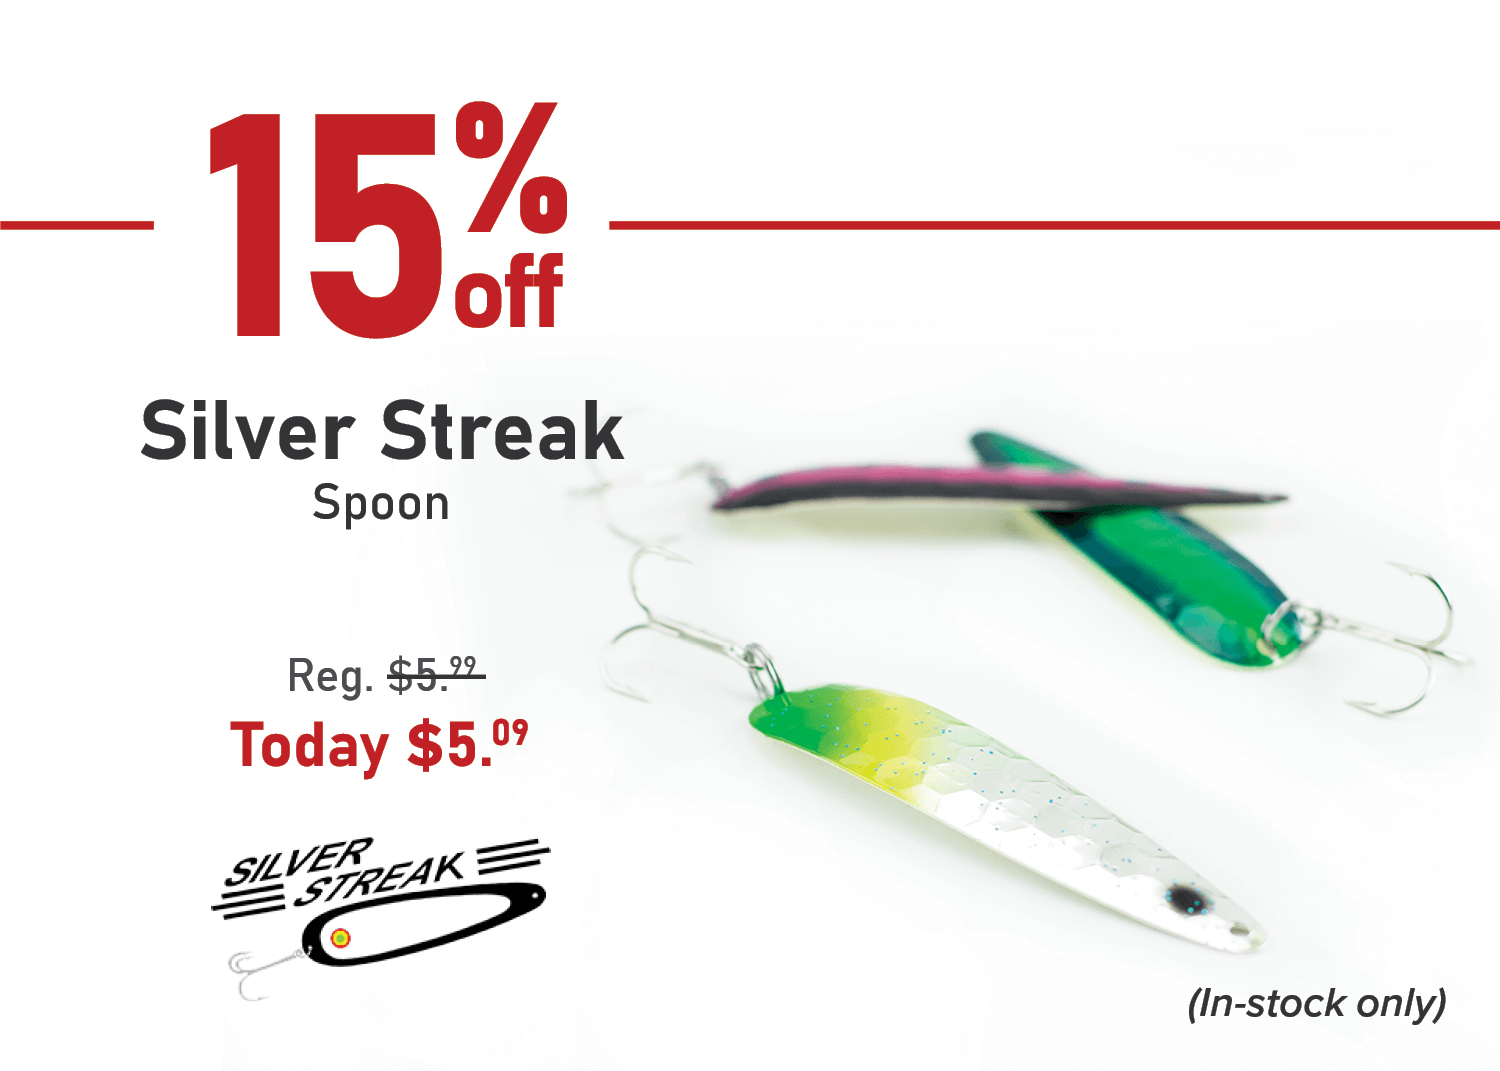 Take 15% off the Silver Streak Spoon